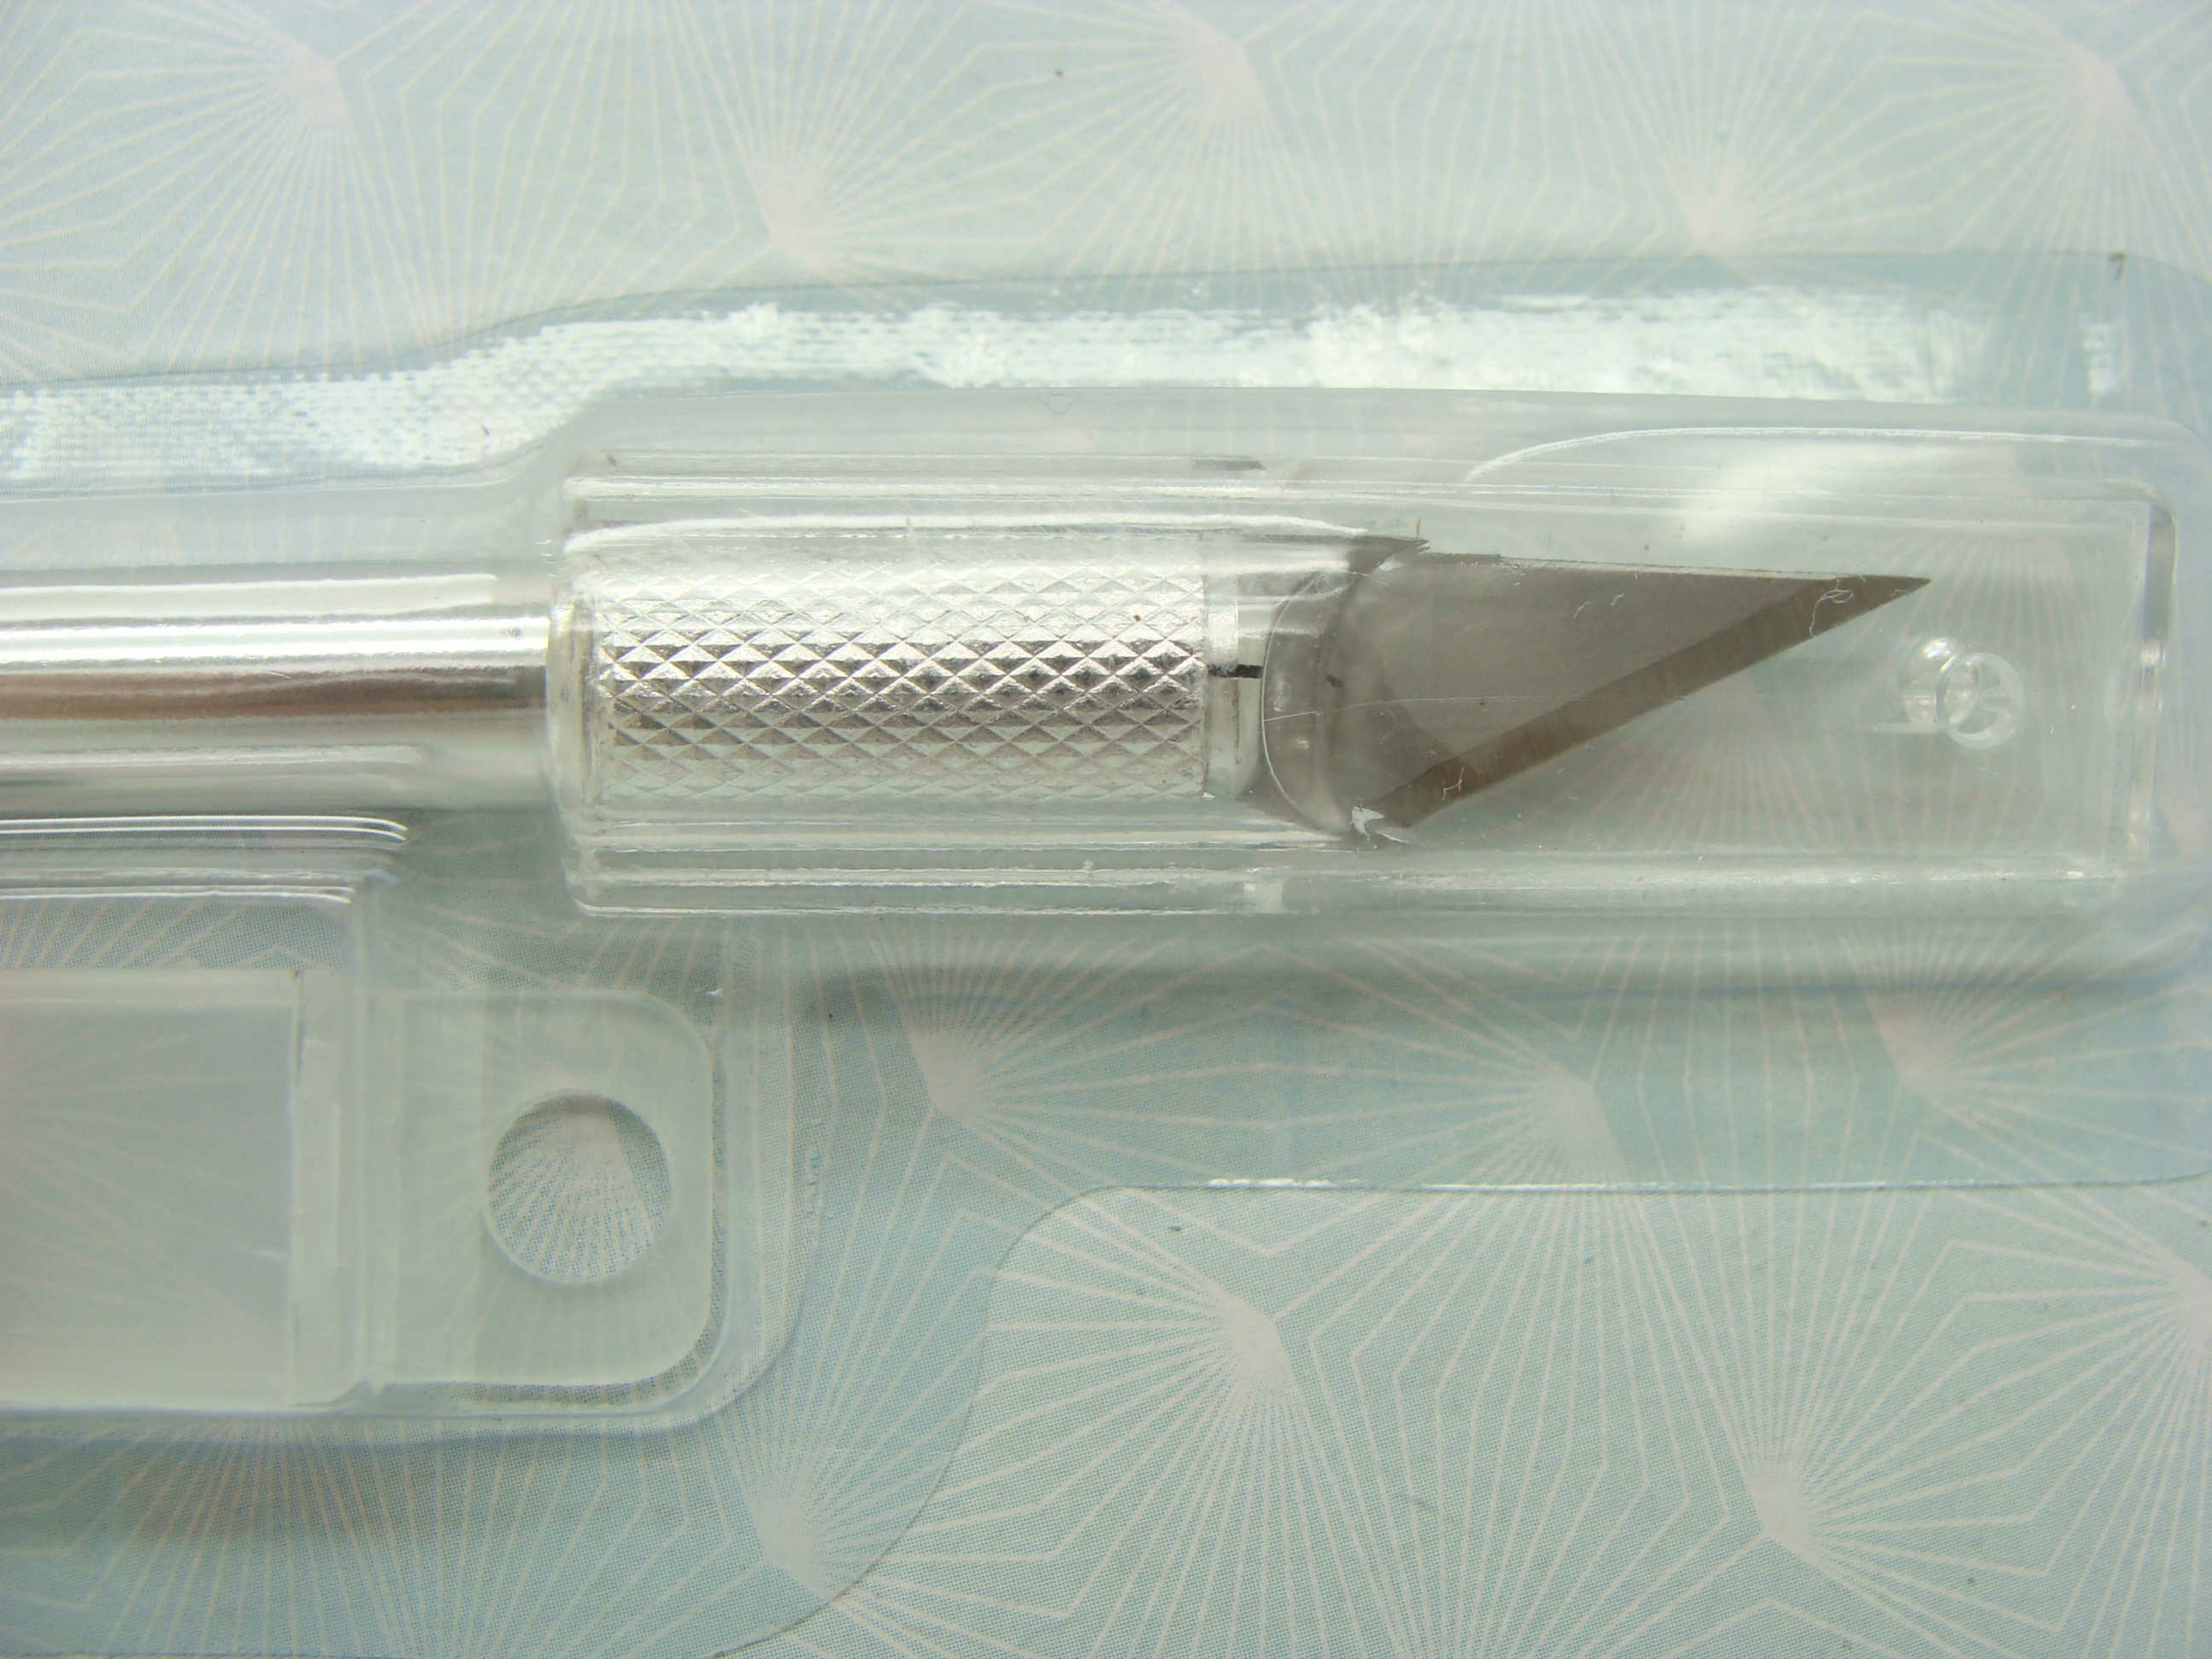 scalpel-artemio-outil-decoupe